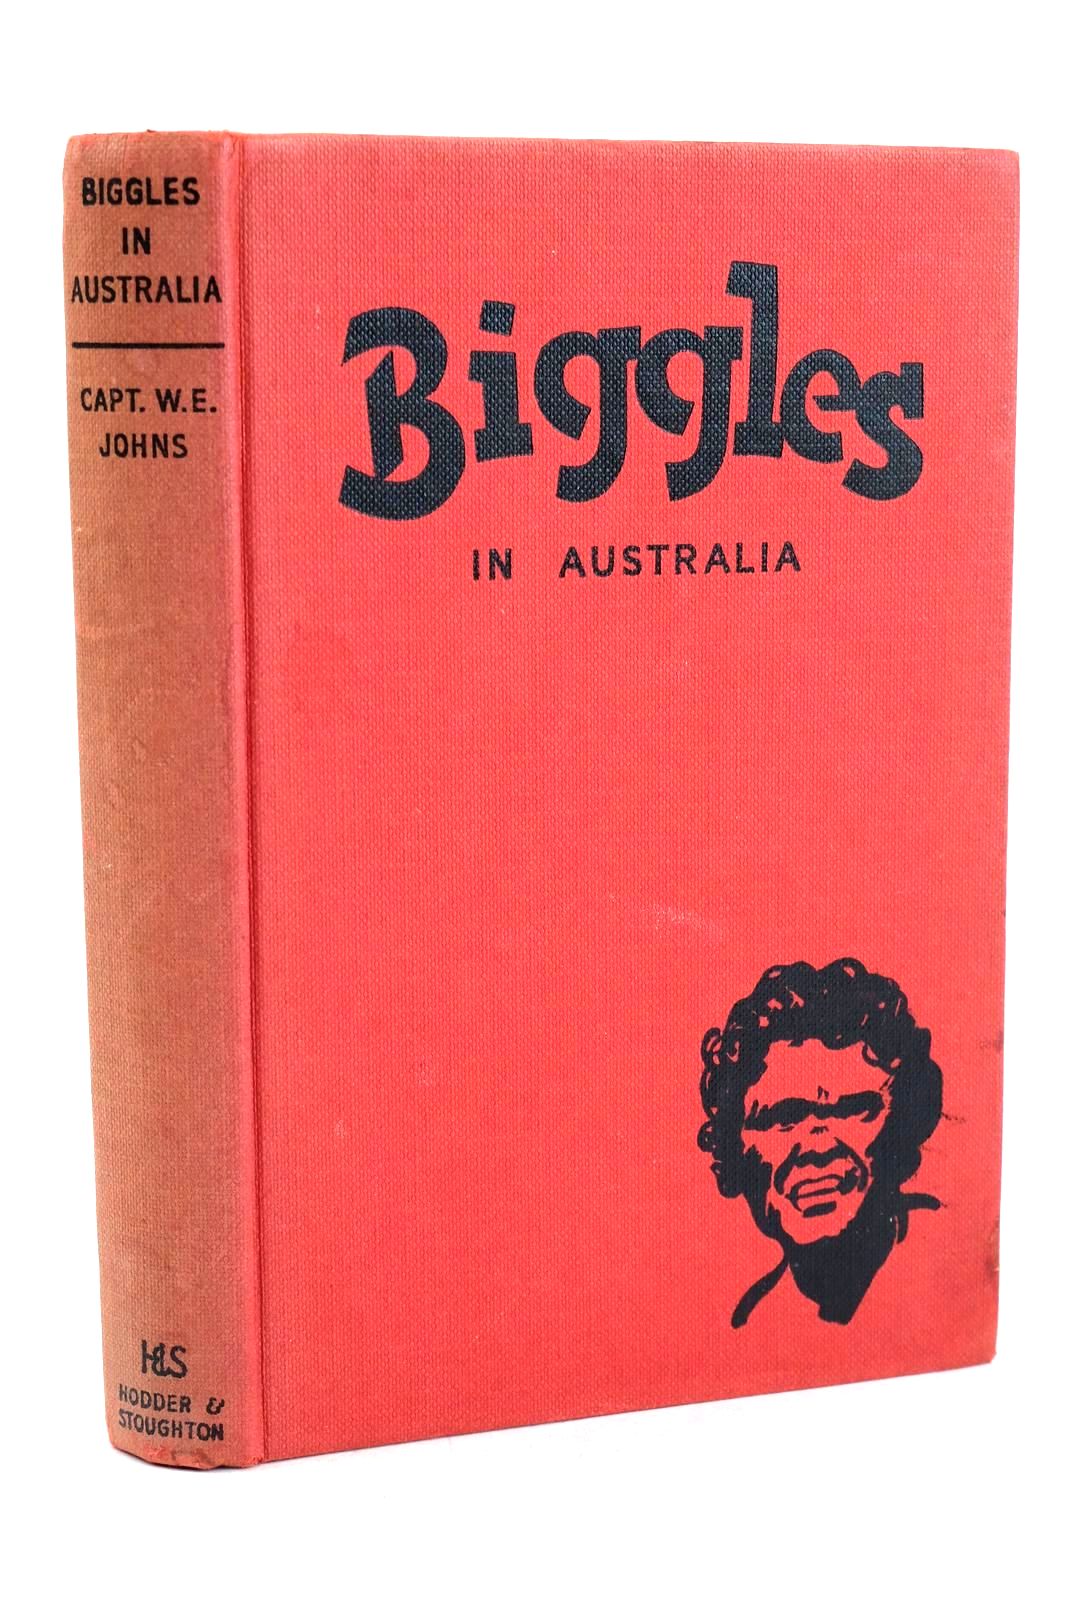 Photo of BIGGLES IN AUSTRALIA- Stock Number: 1326617